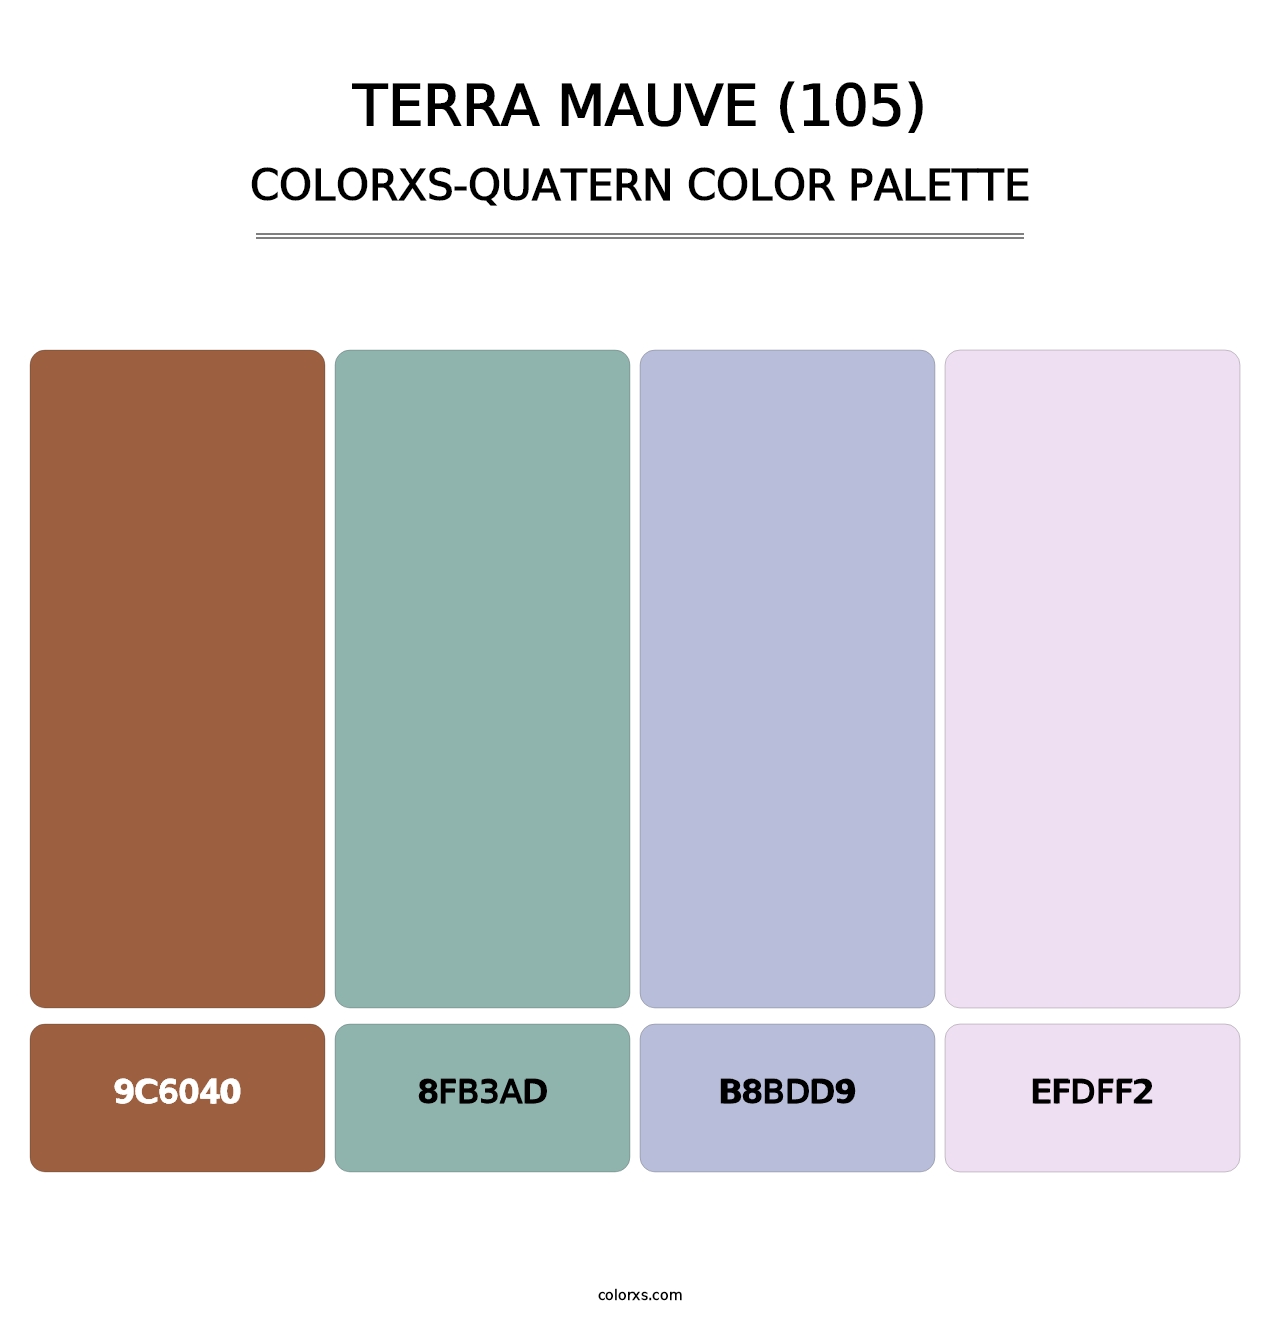 Terra Mauve (105) - Colorxs Quatern Palette